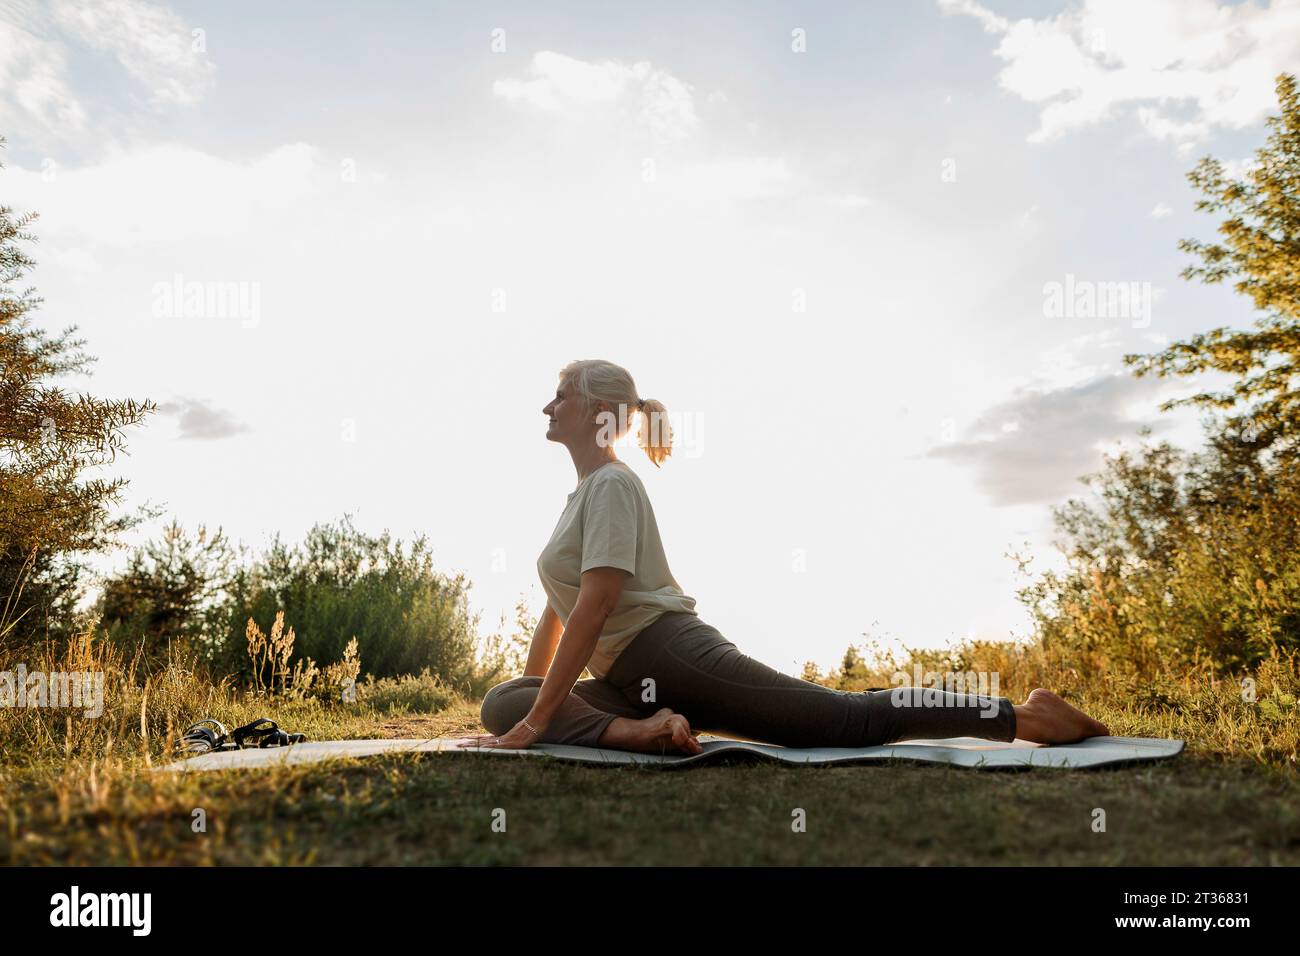 Frau übt Yoga auf Matte in der Nähe von Pflanzen Stockfoto